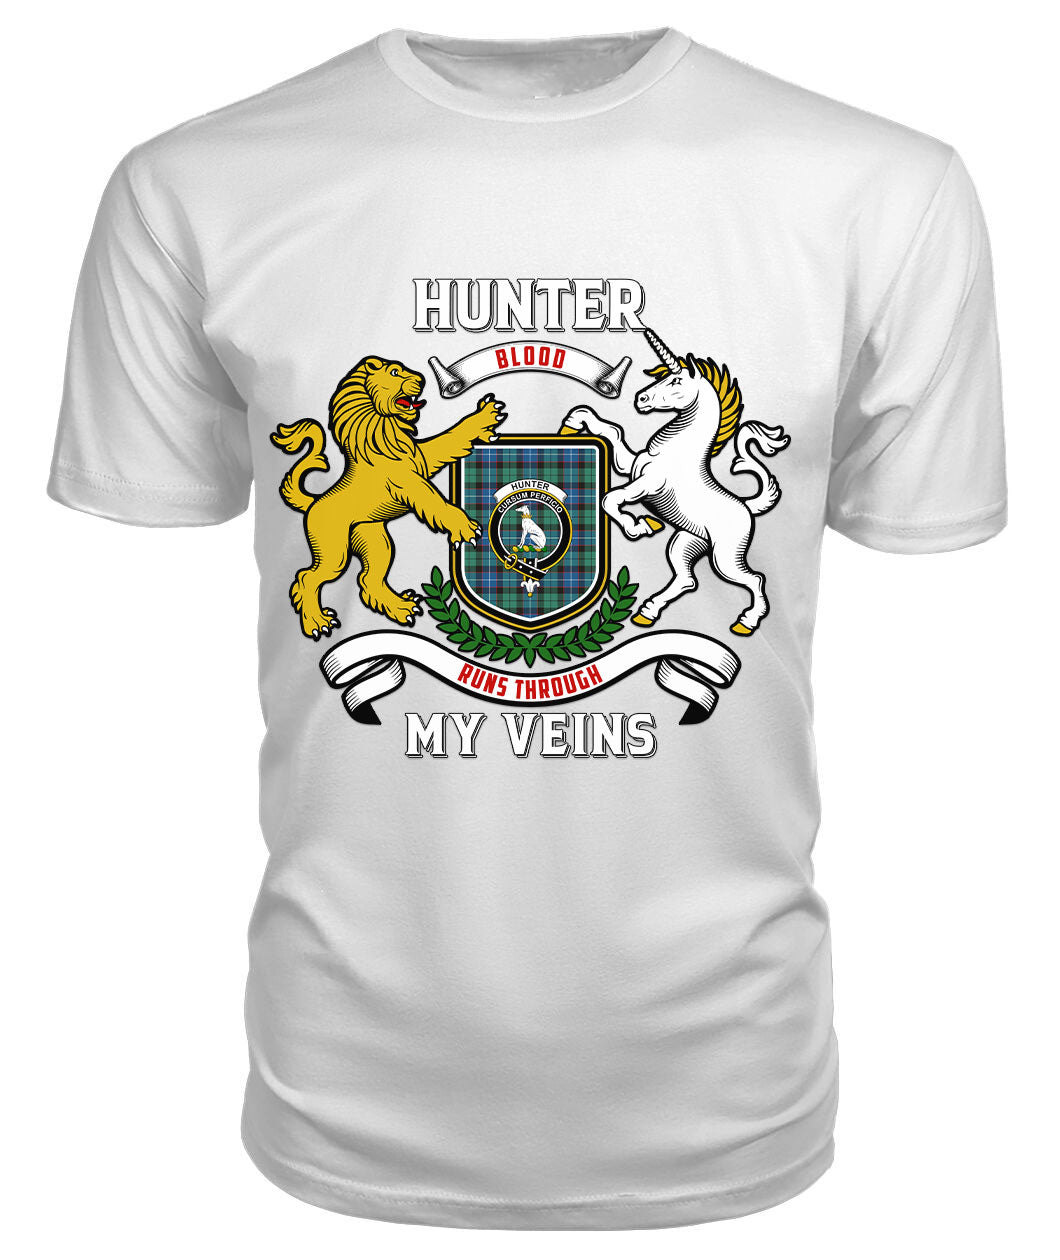 Hunter Ancient Tartan Crest 2D T-shirt - Blood Runs Through My Veins Style